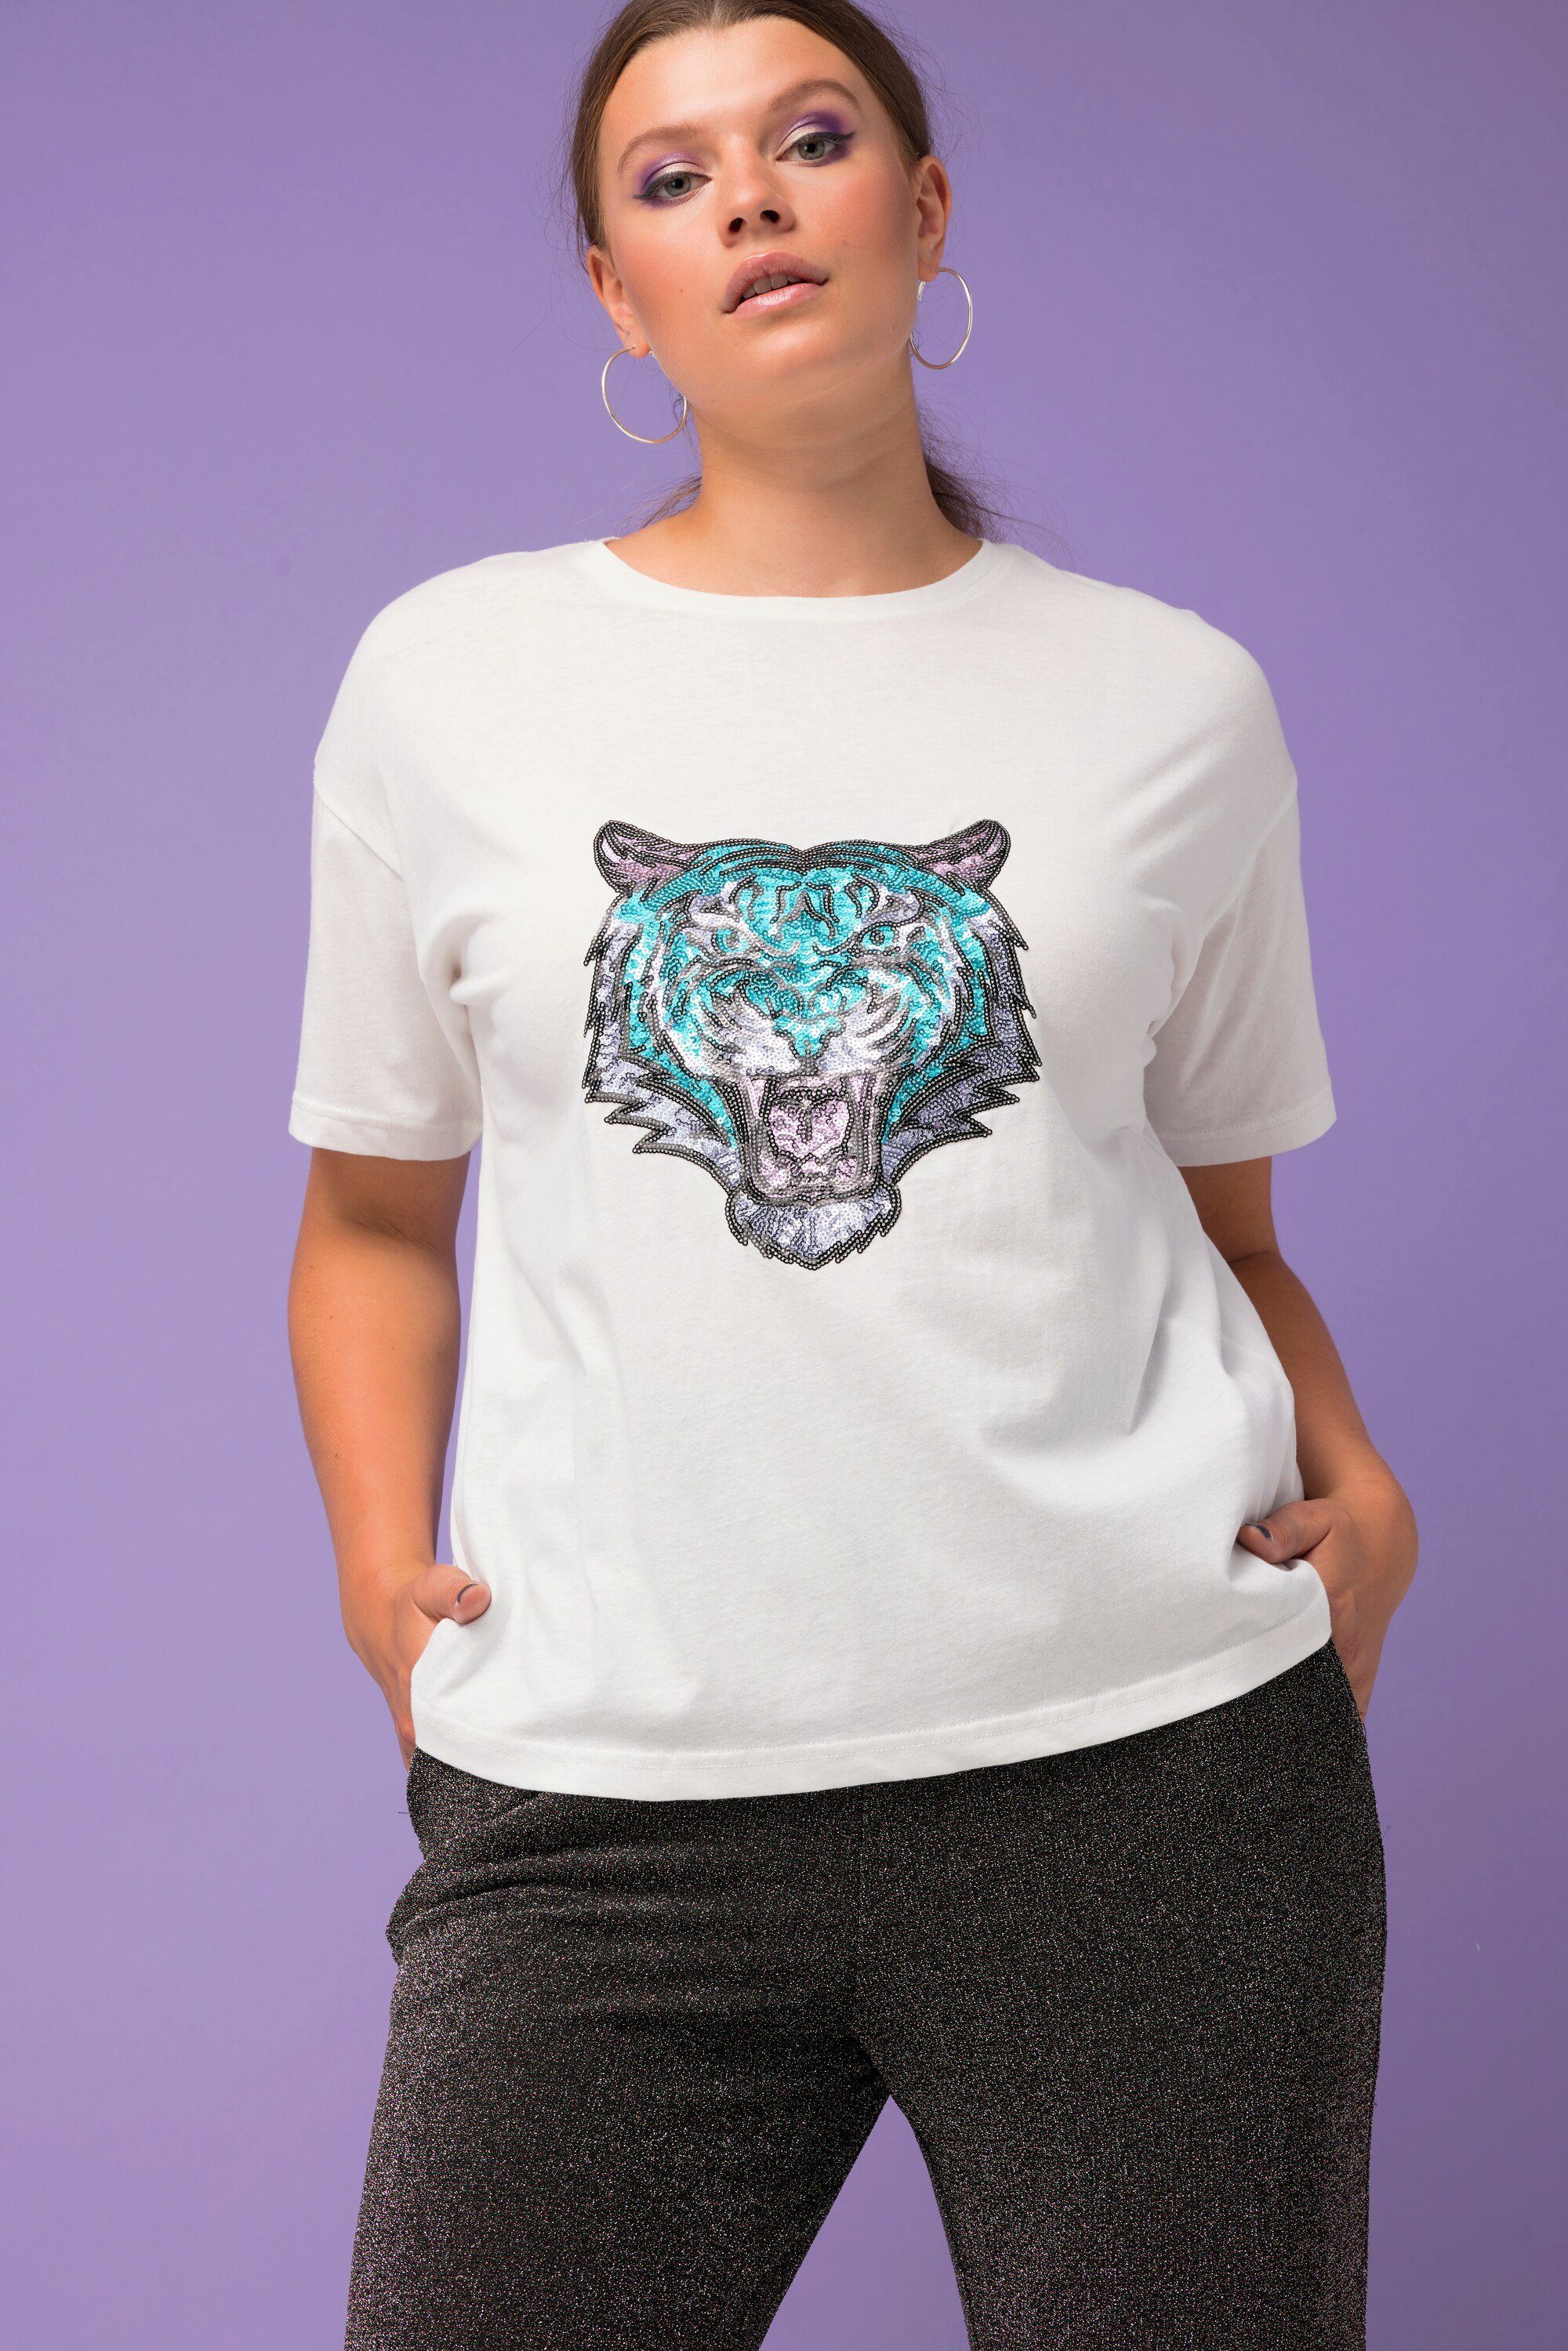 Studio offwhite T-Shirt oversized Tiger Rundhalsshirt Untold Pailletten-Patch Rundhals